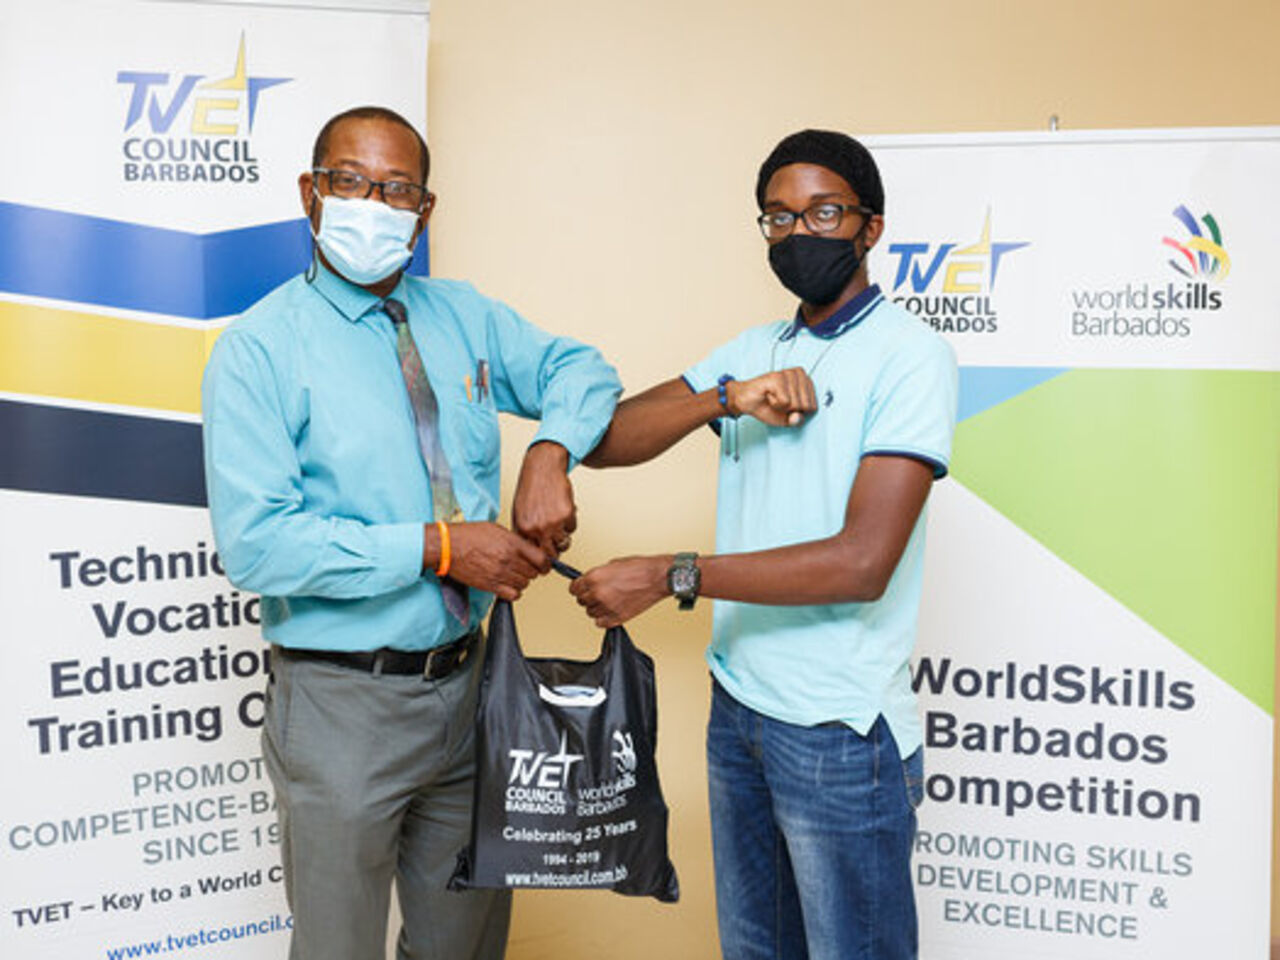 Worldskills Barbados将未来与初级技能营